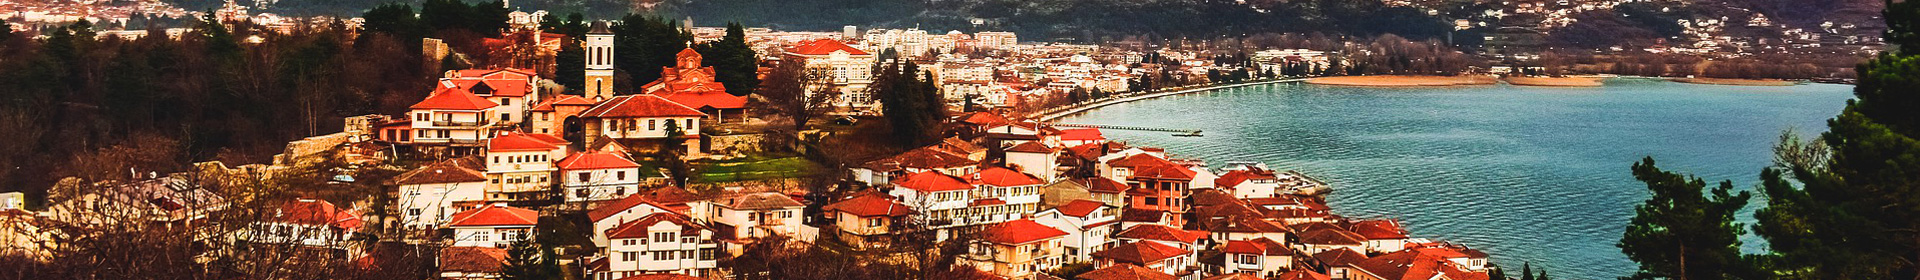 Хотели в Македония